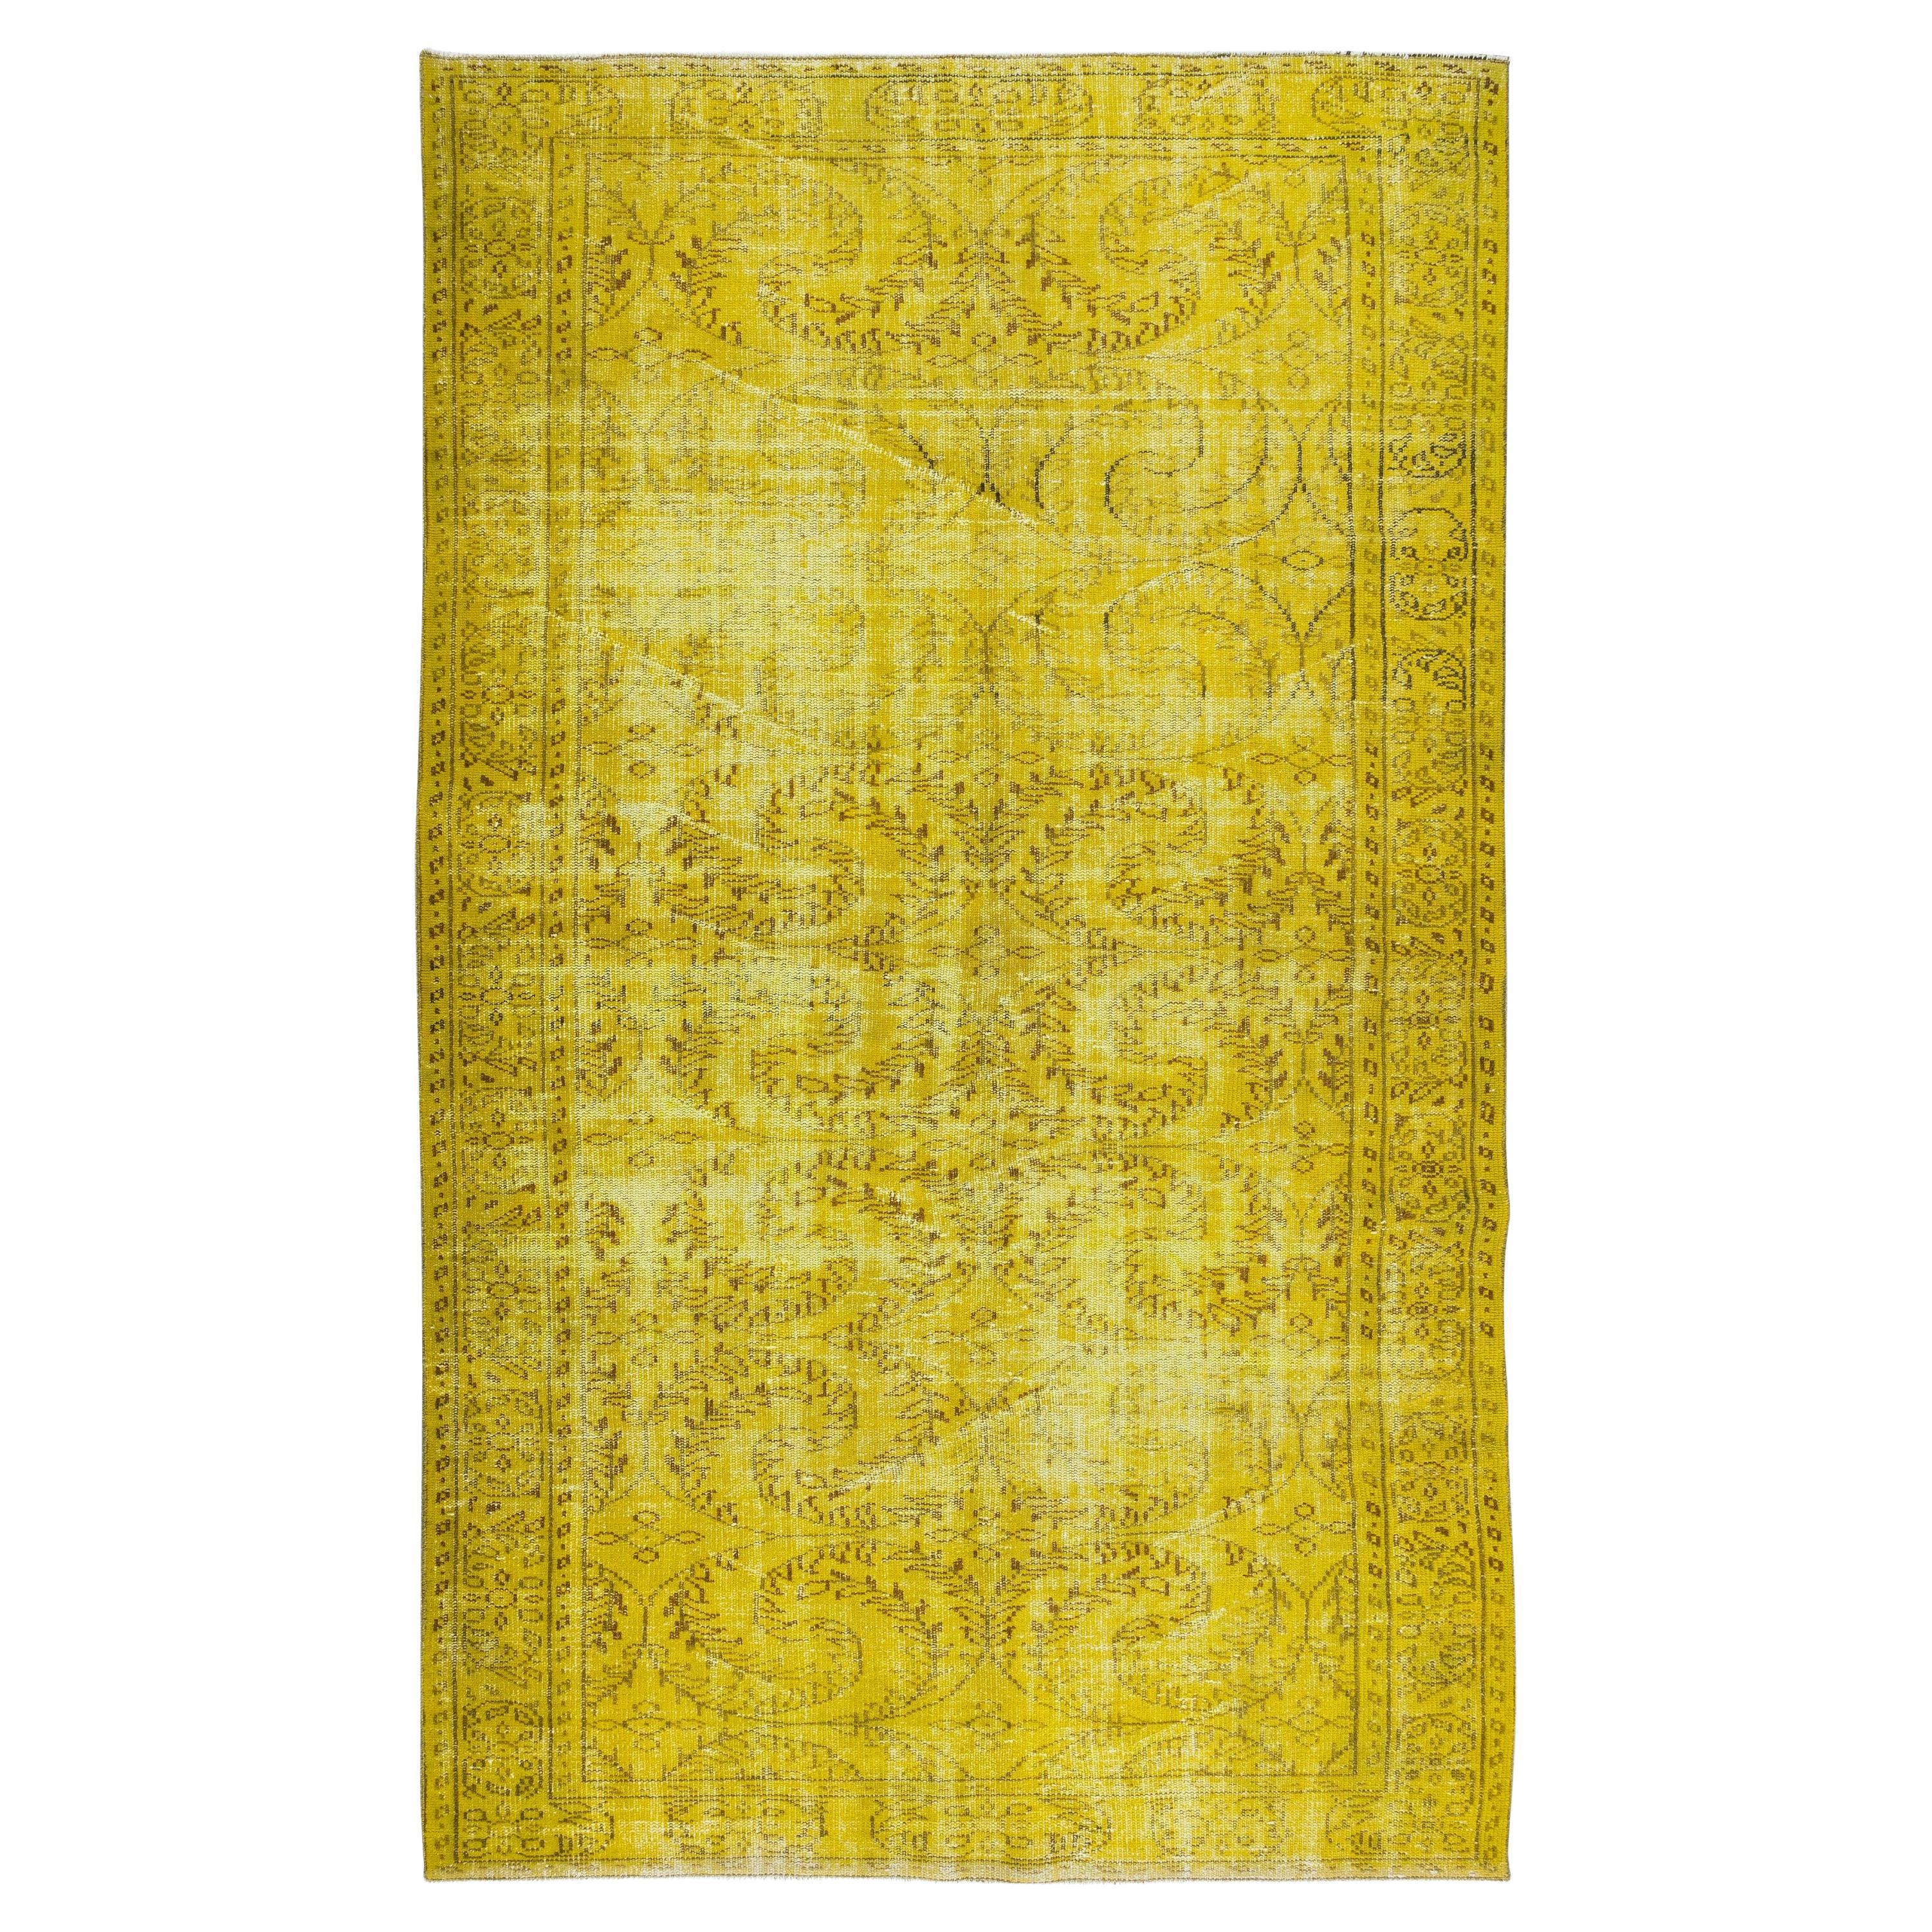 Tapis jaune teinté à la main 5,7x9,6 m, tapis décoratif vintage de Turquie